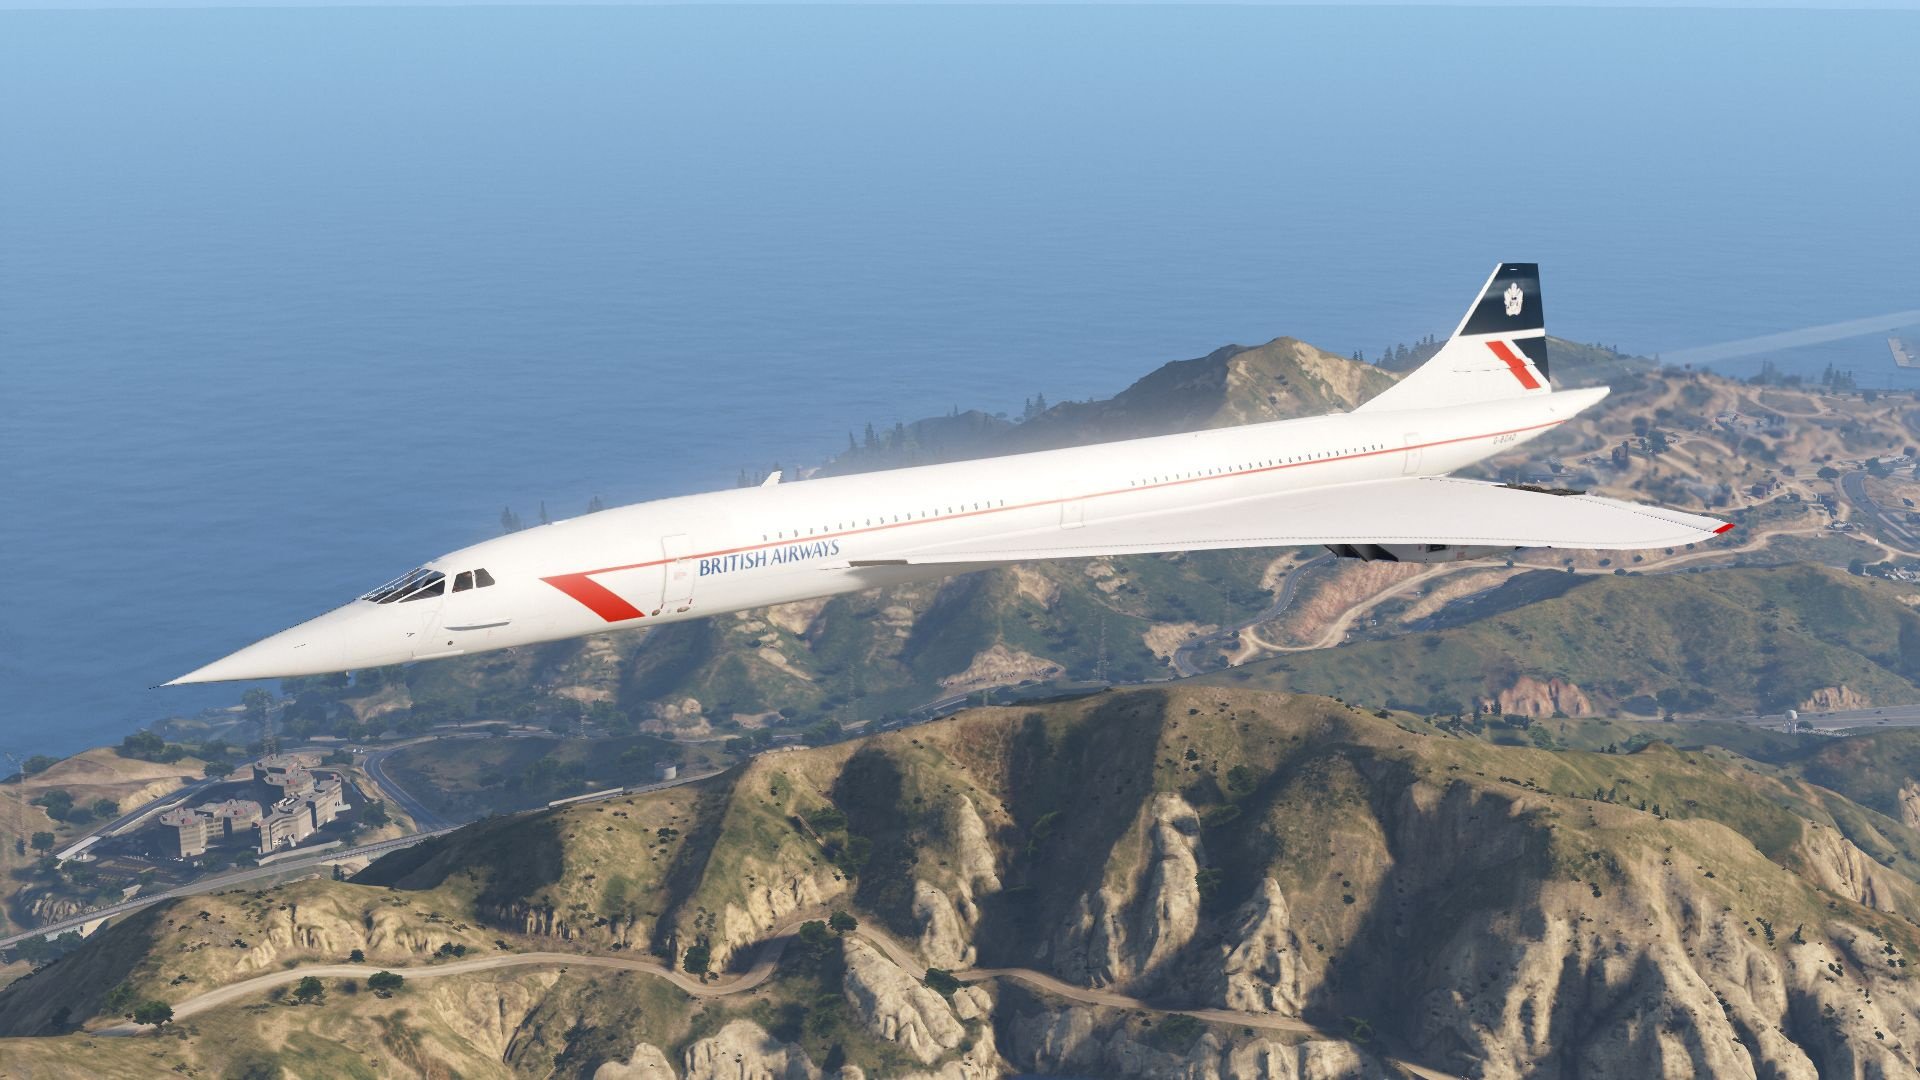 Concorde #6